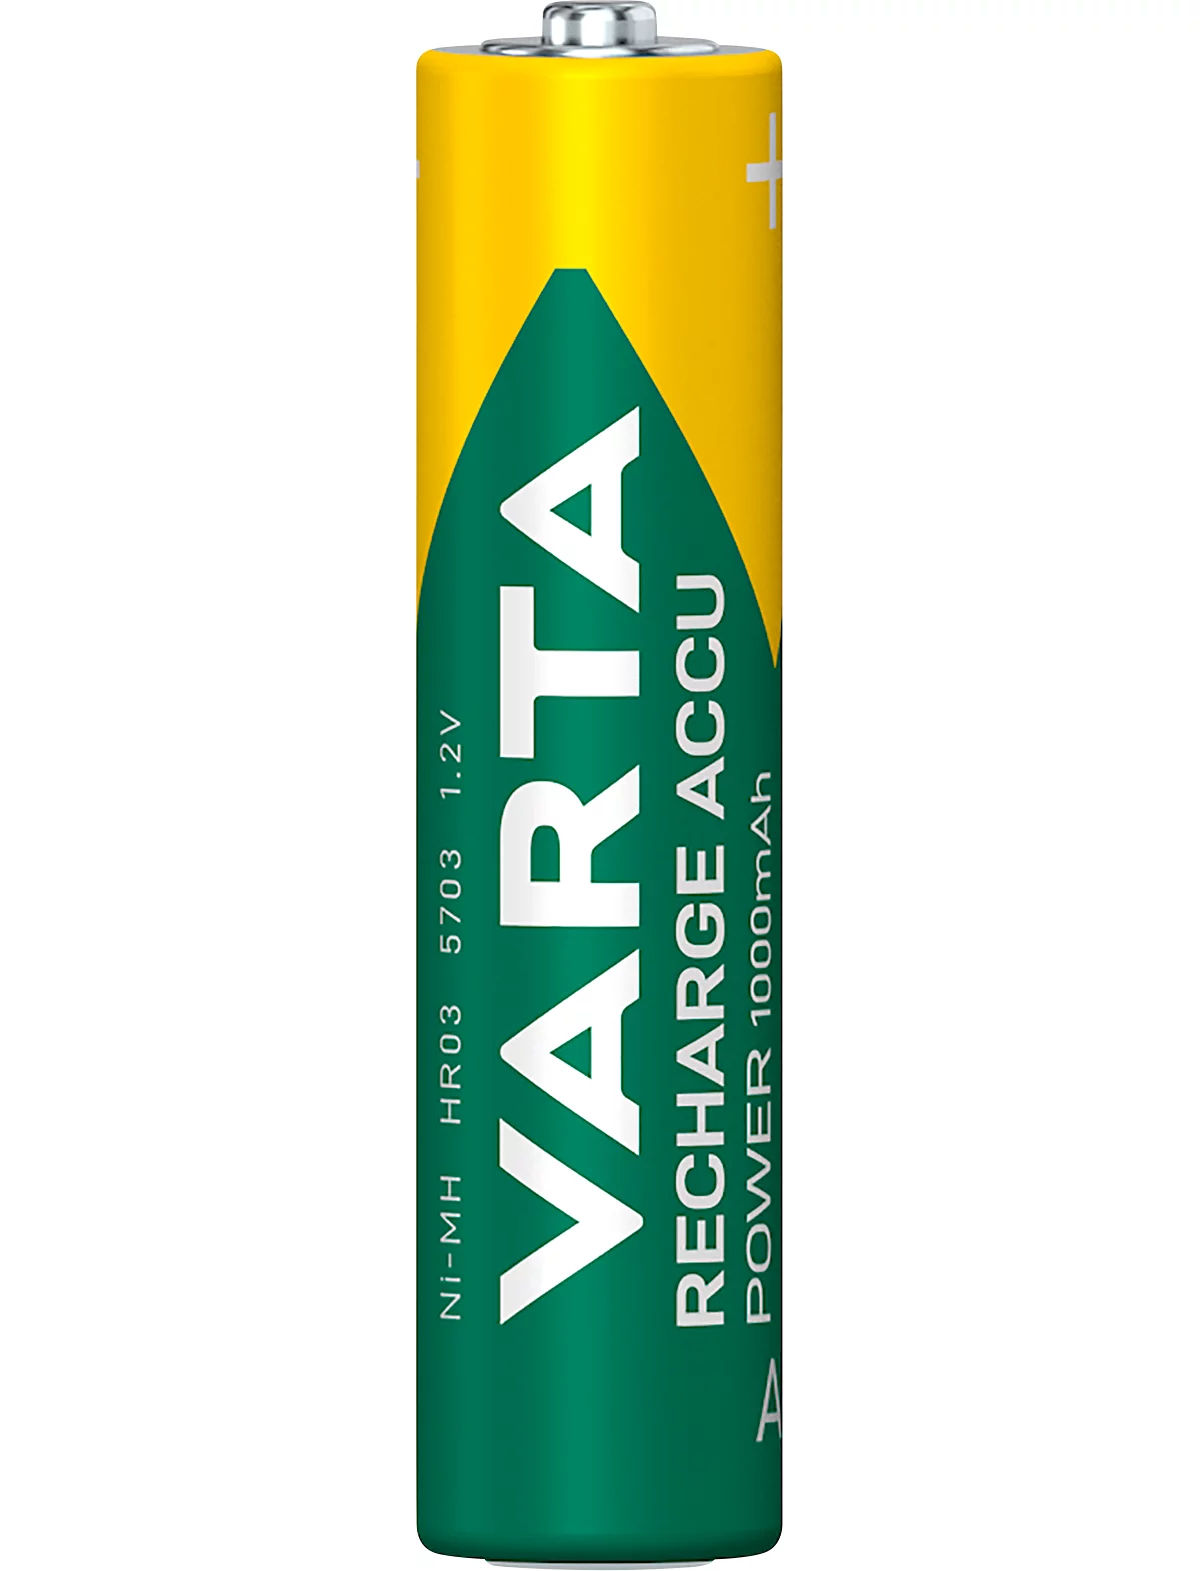 Akkus von VARTA, Micro AAA, 4 Stück